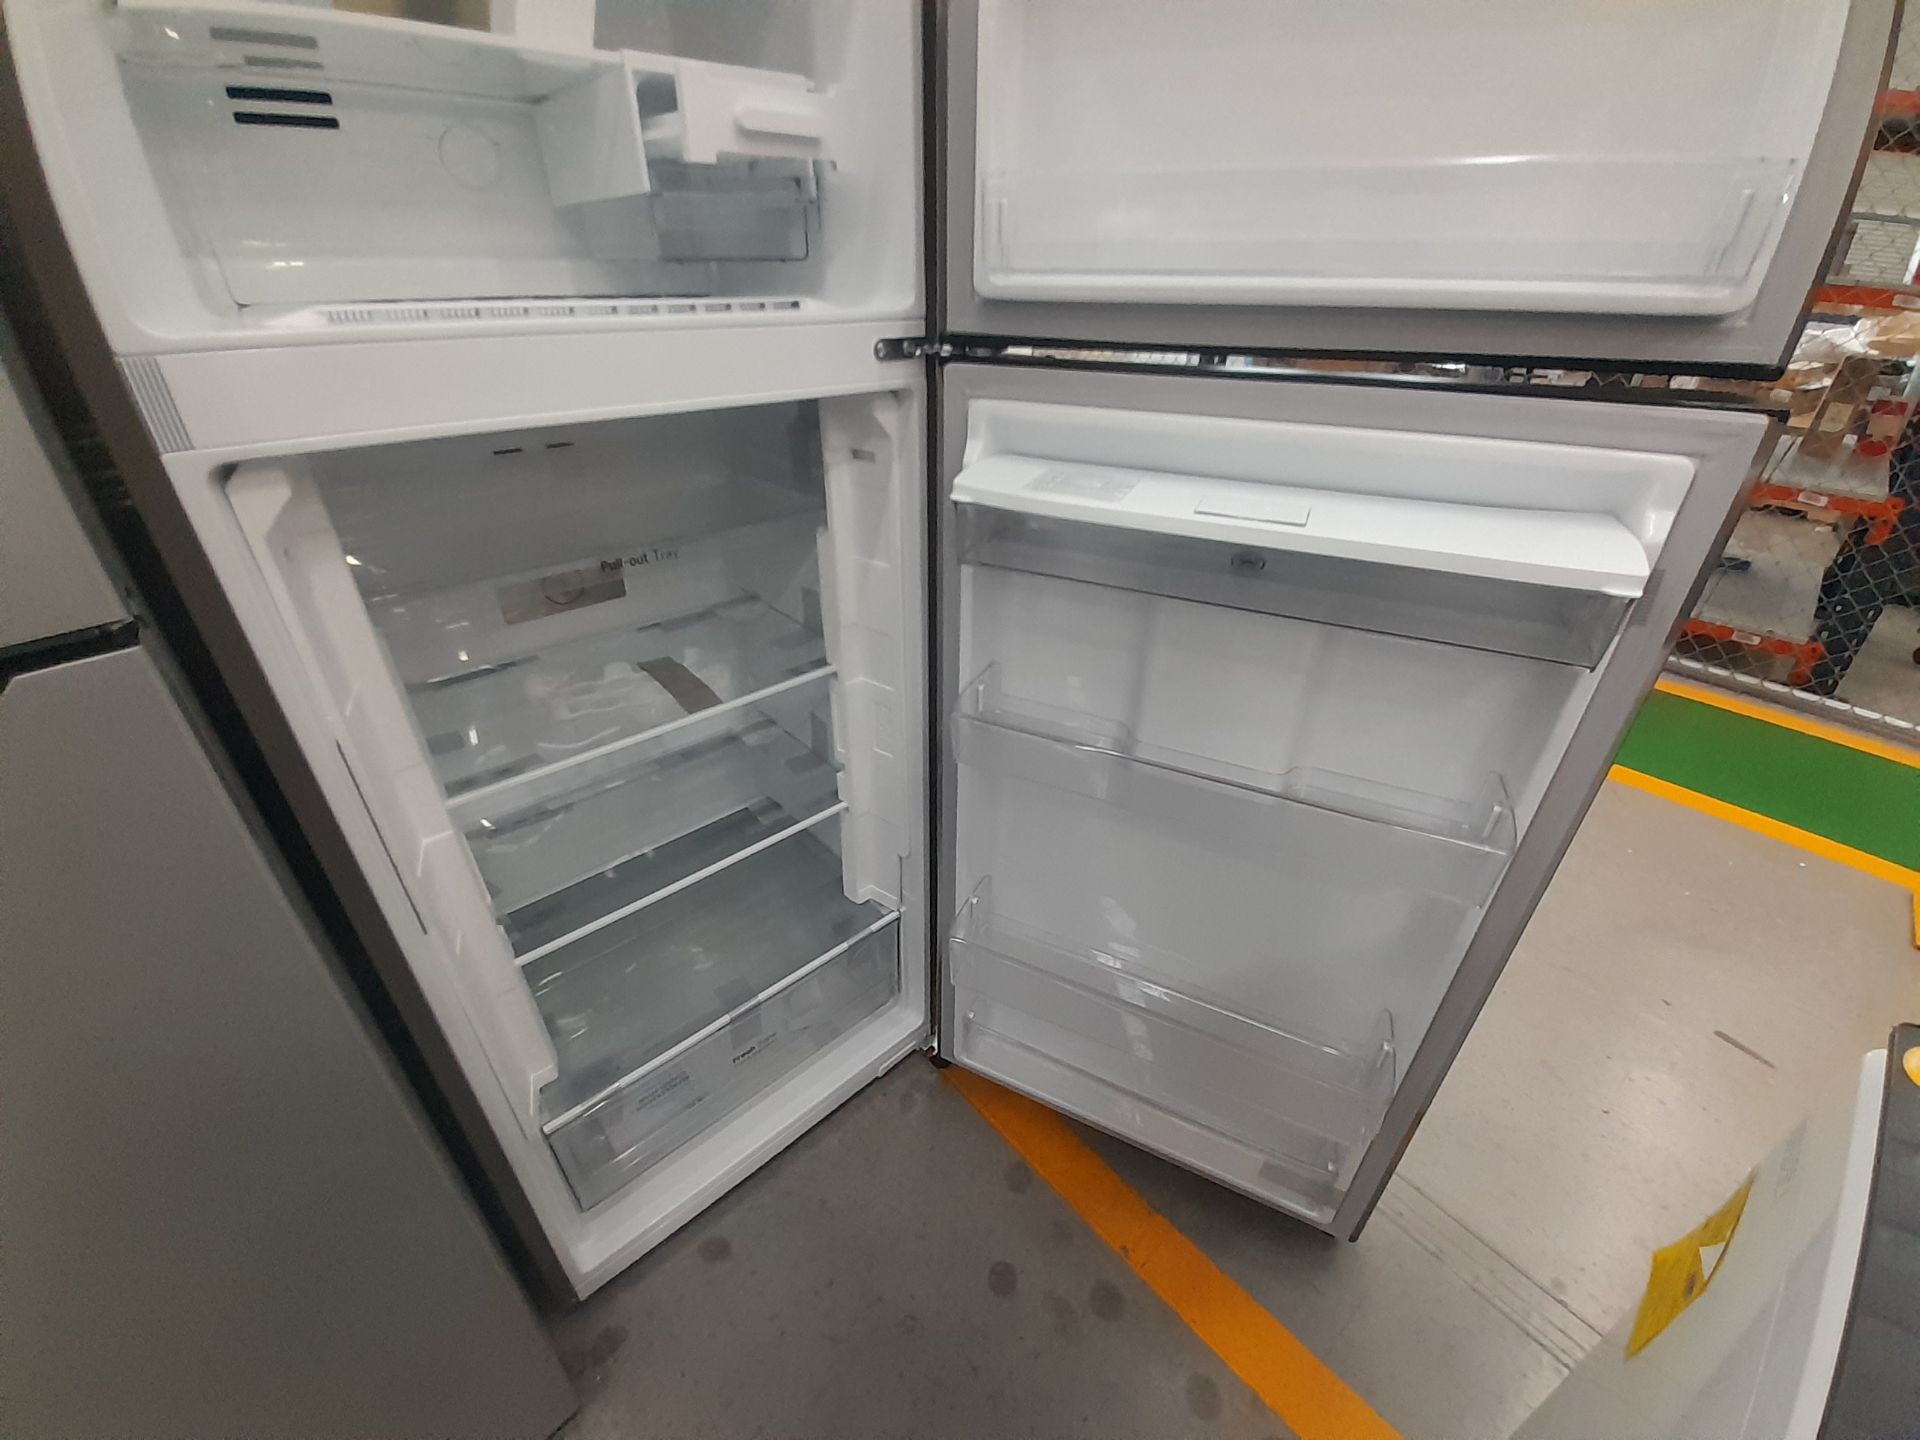 Lote de 1 Refrigerador Marca LG, Modelo VT40WP, Color GRIS (No se asegura su funcionamiento, fa - Image 5 of 6